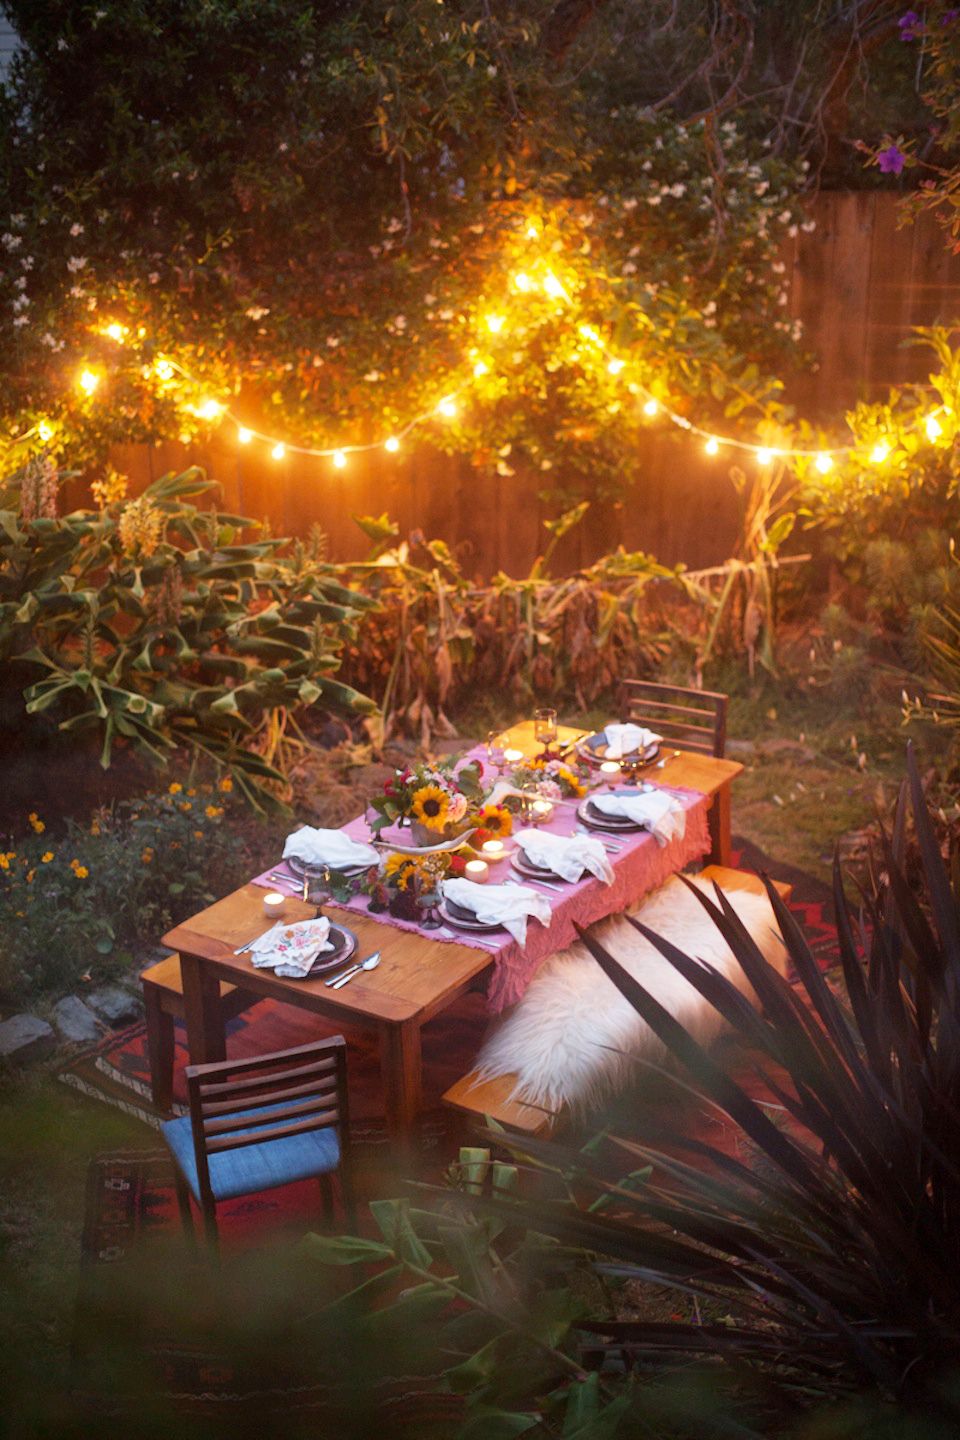 20 best garden party ideas - how to throw a fun garden-themed party